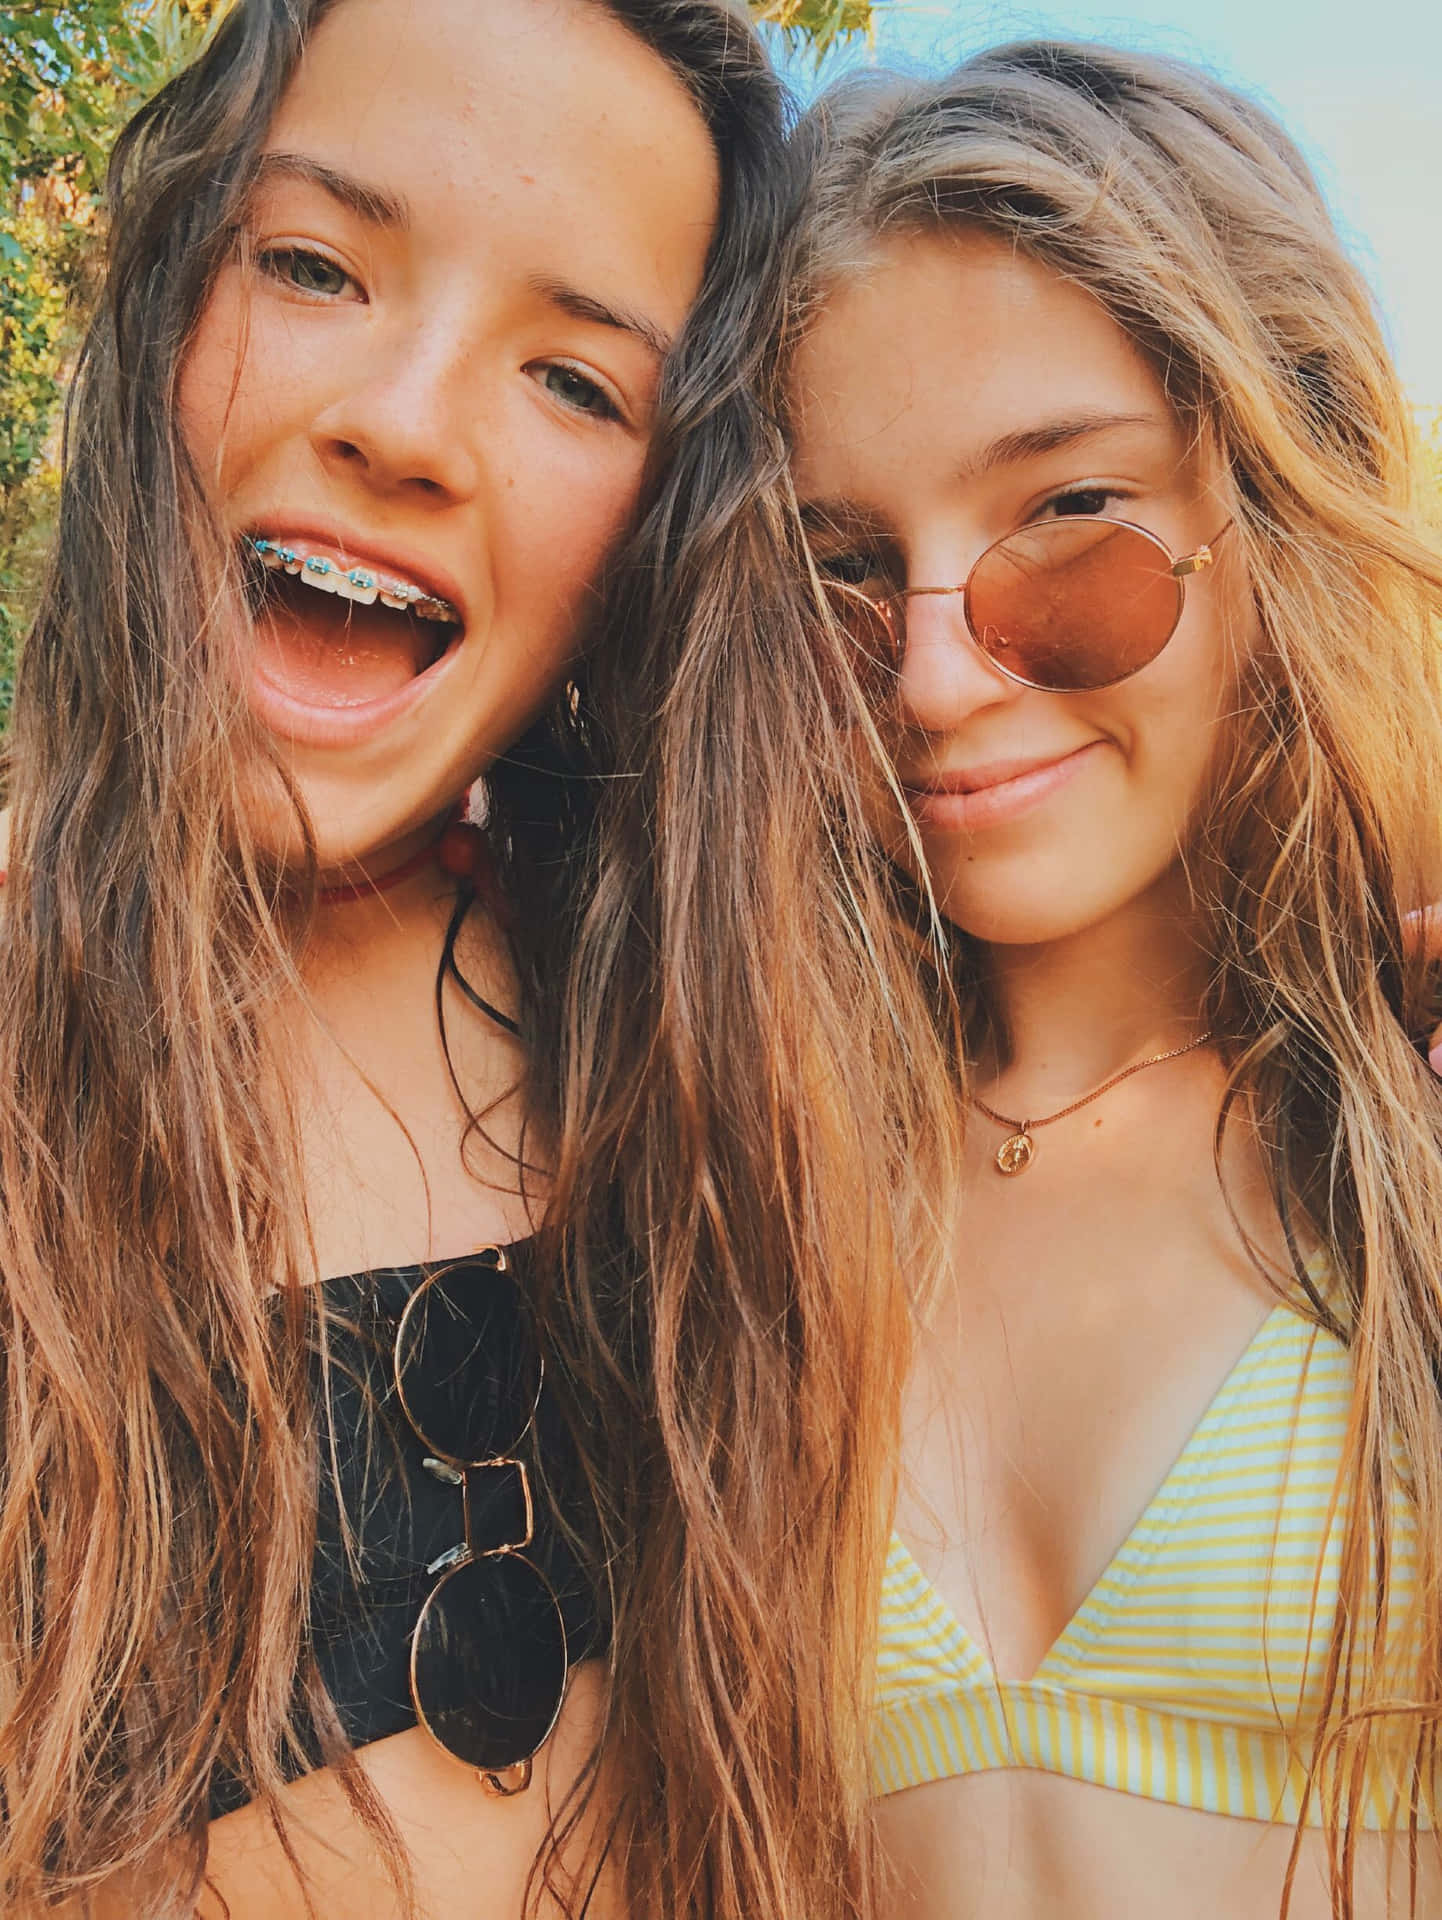 Bildervon Teenage Girls Mit Sonnenbrillen Und Braunem Haar